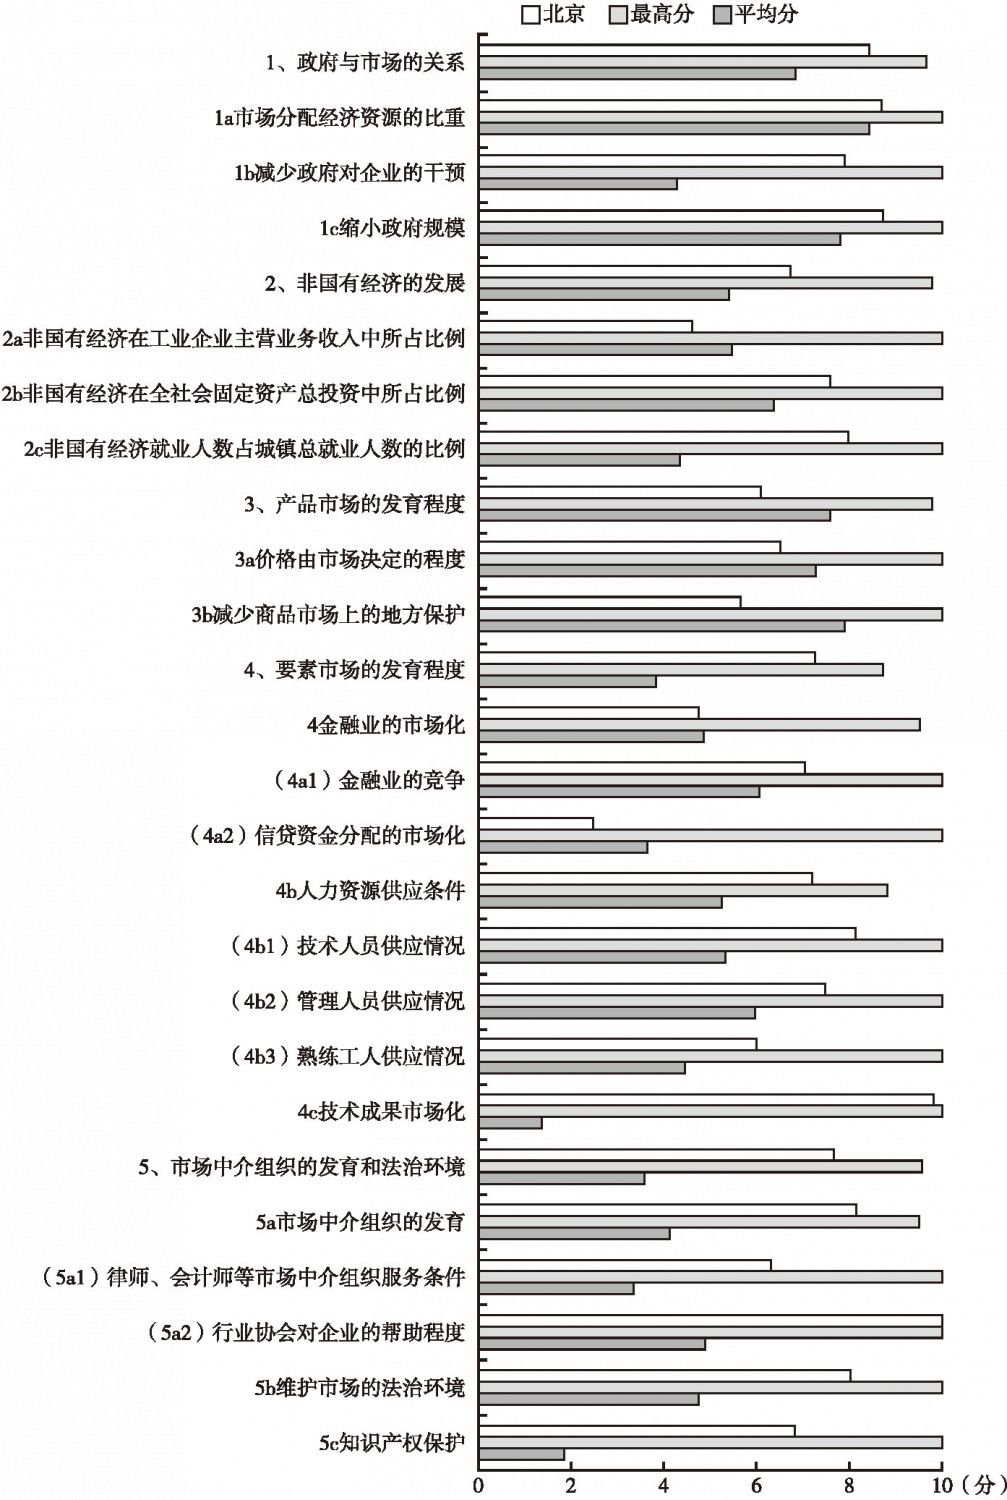 2008年北京市场化各方面指数和分项指数与全国最高分及平均分的比较